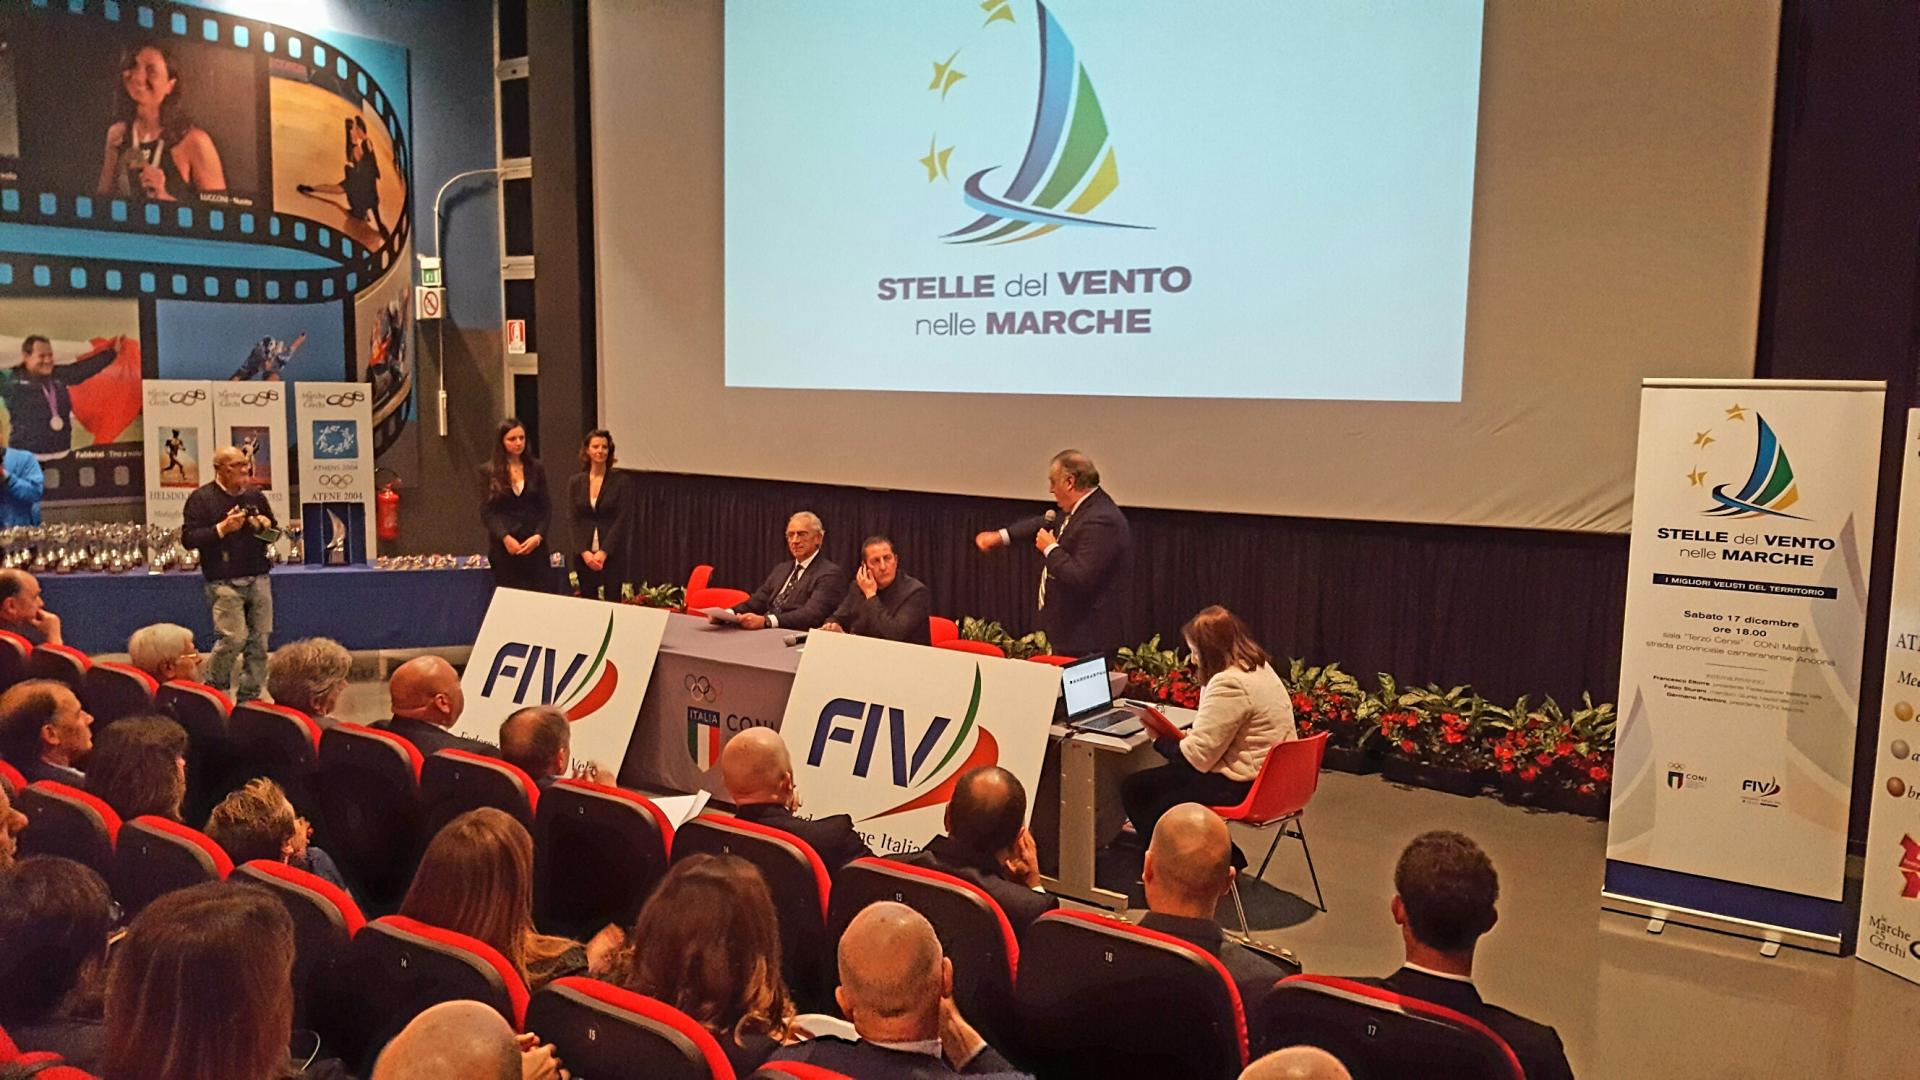 Stelle del Vento alla presenza di Francesco Ettorre, presidente FIV, ospite d’onore